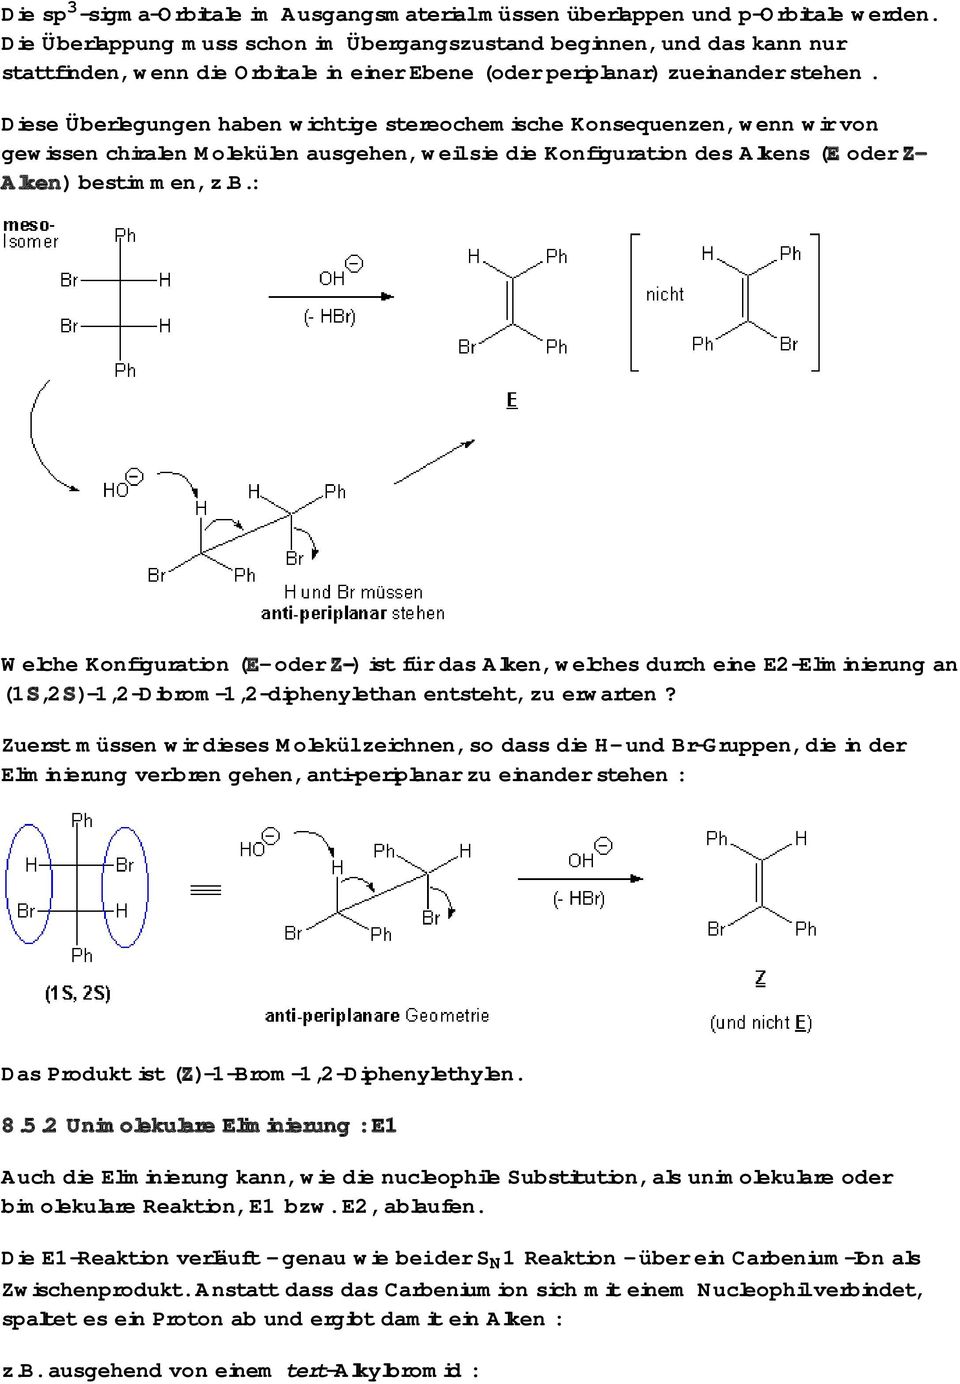 Diese Überlegungen haben wichtige stereochemische Konsequenzen, wenn wir von gewissen chiralen Molekülen ausgehen, weil sie die Konfiguration des Alkens (E oder Z- Alken) bestimmen, z.b.: Welche Konfiguration (E- oder Z-) ist für das Alken, welches durch eine E2-Eliminierung an (1S,2S)-1,2-Dibrom-1,2-diphenylethan entsteht, zu erwarten?